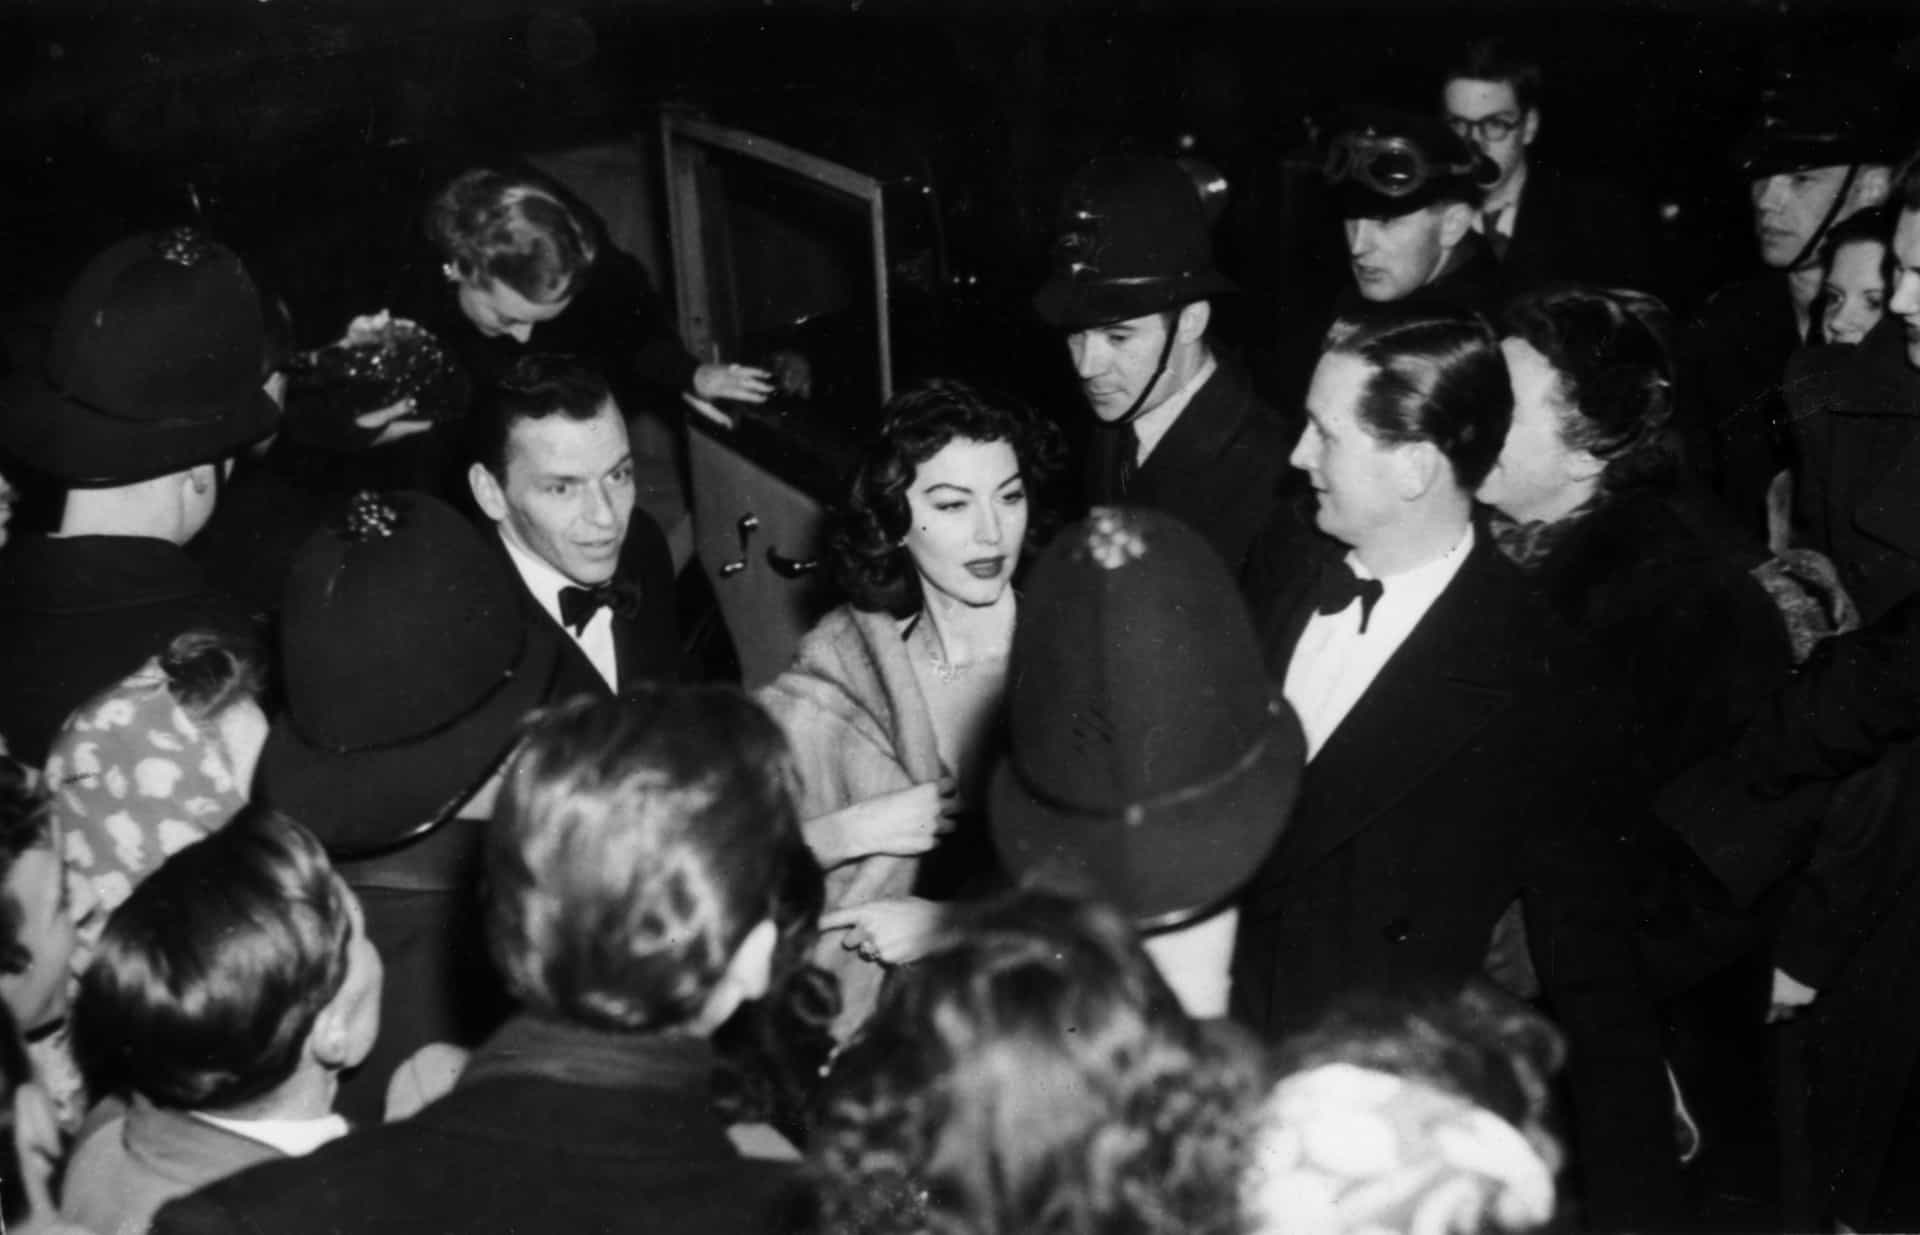 Frank und seine zweite Frau, die Schauspielerin Ava Gardner, kommen am London Coliseum an und besuchen die Midnight Matinee. Die Fans flippen massenweise aus.